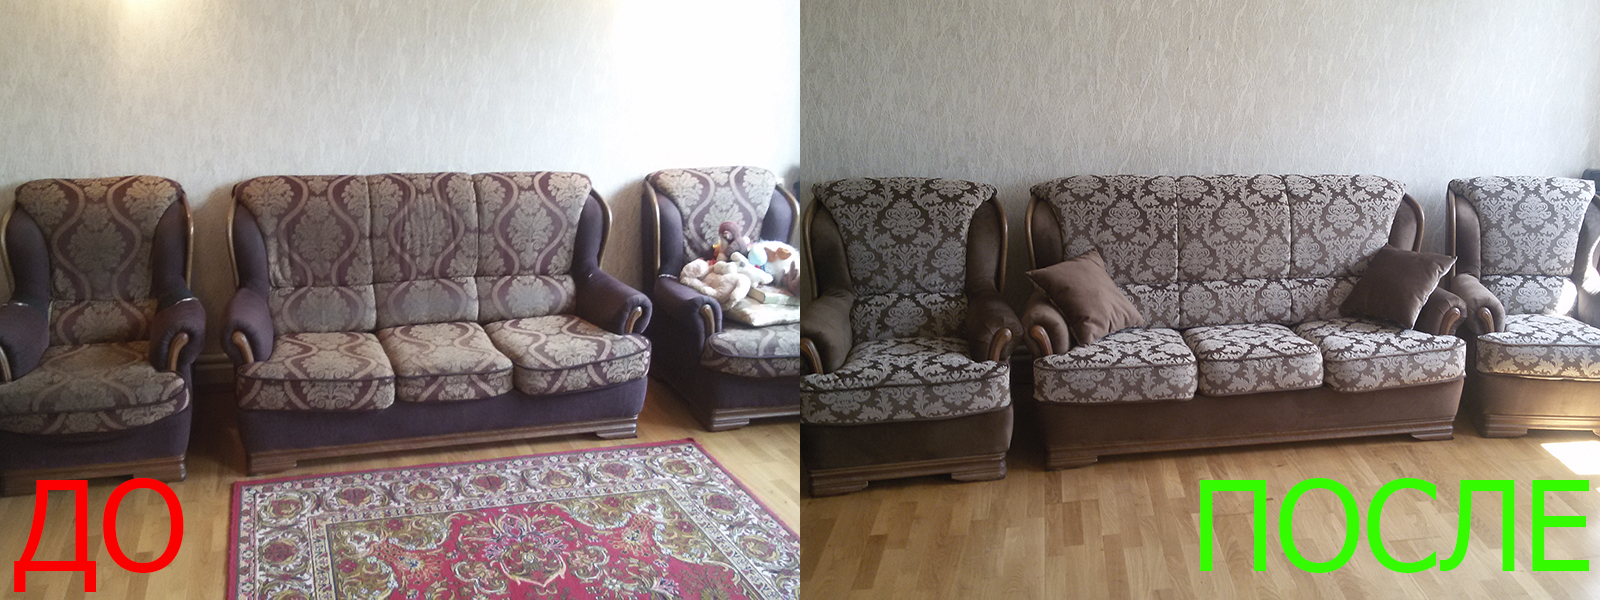 Перетяжка мягкой мебели в Крыму - разумная стоимость, расчет по фото, высокое качество работы